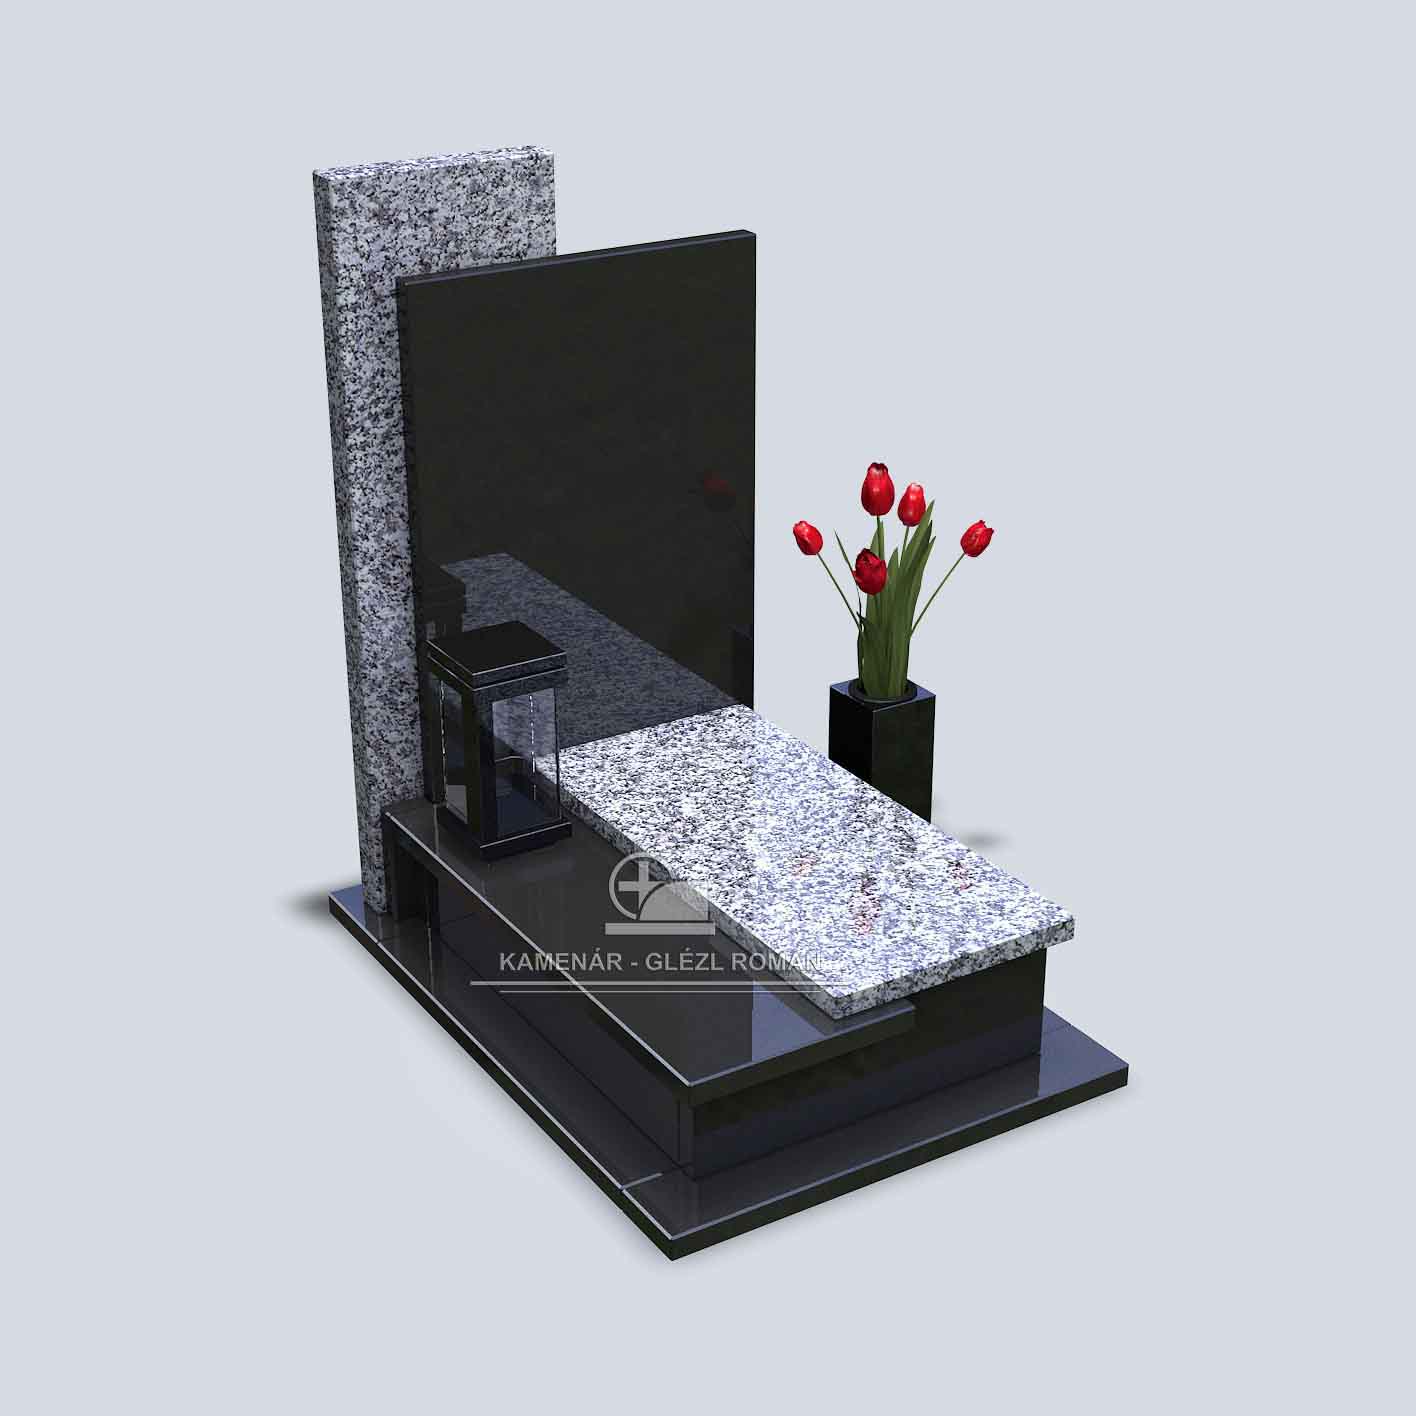 Urnový pomník zo žuly v tmavej a bledej farbe s kamenným svietnikom a vázou s tulipánmi